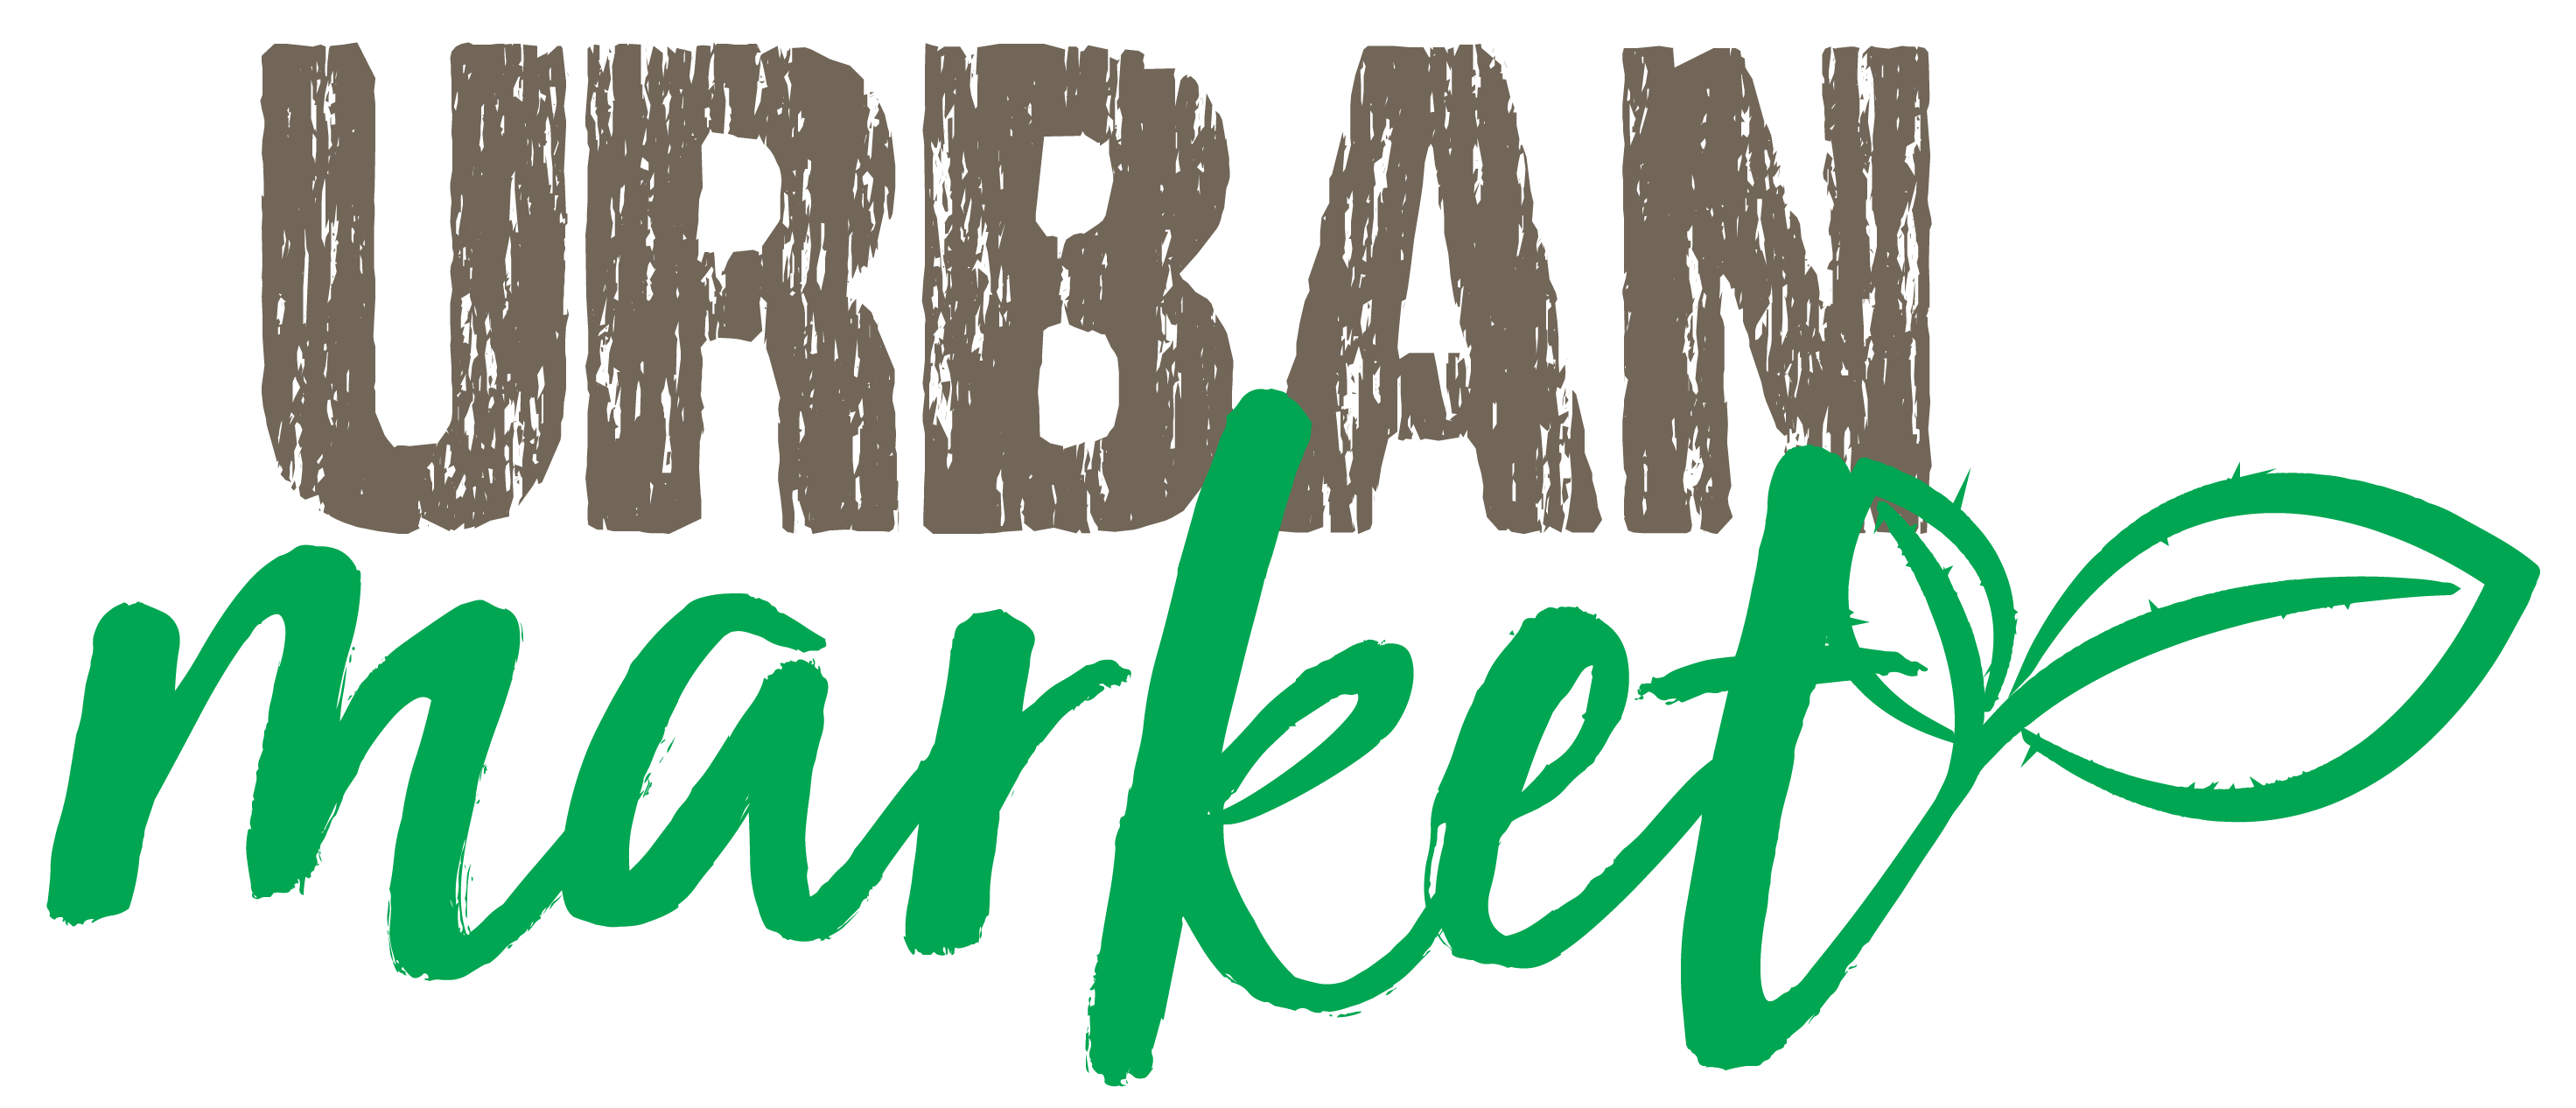 Urban Market